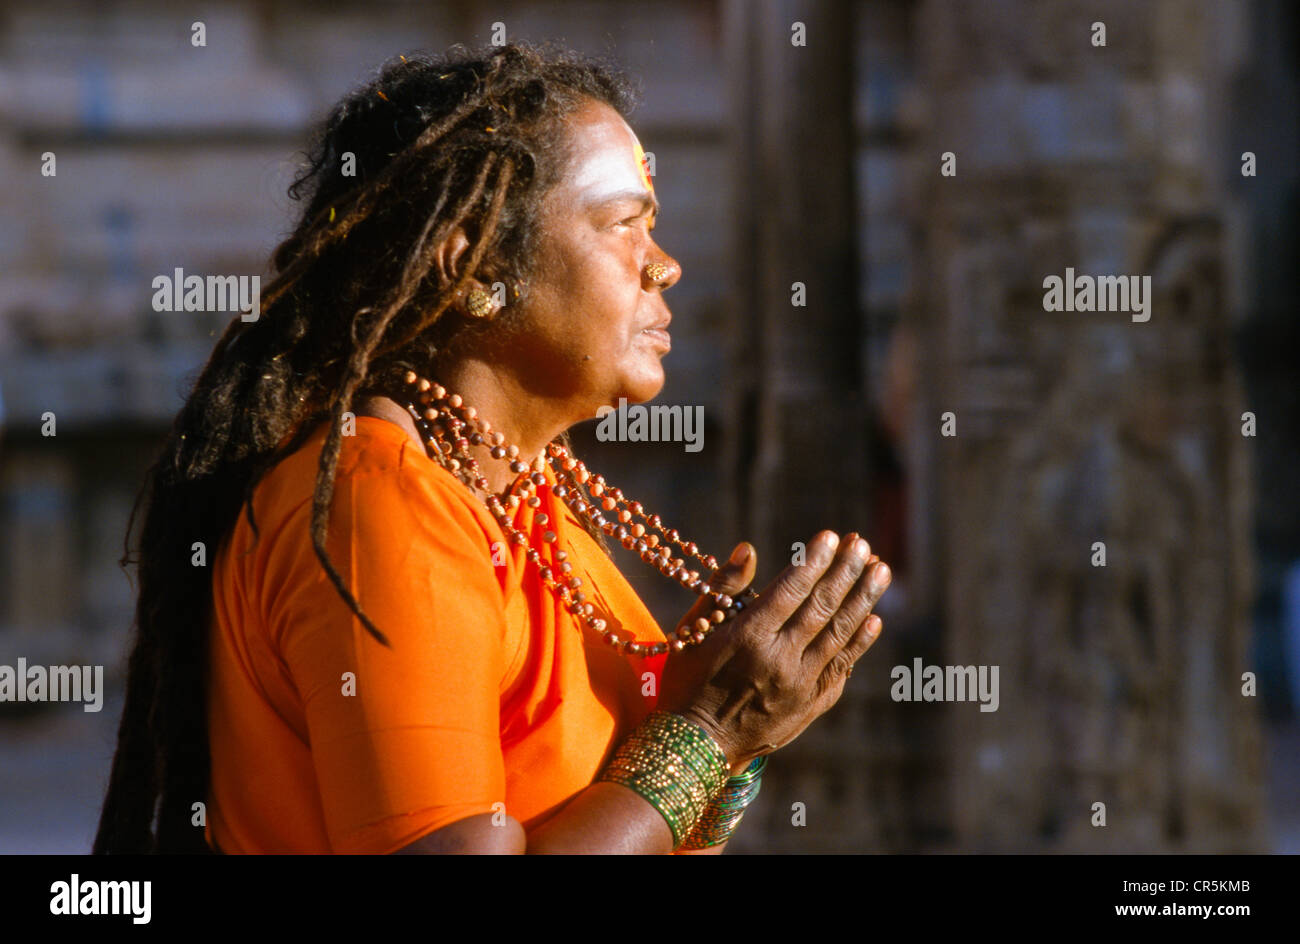 Dévot priant à l'intérieur des temples, Srirangam Tiruchirappalli, Tamil Nadu, Inde, Asie Banque D'Images